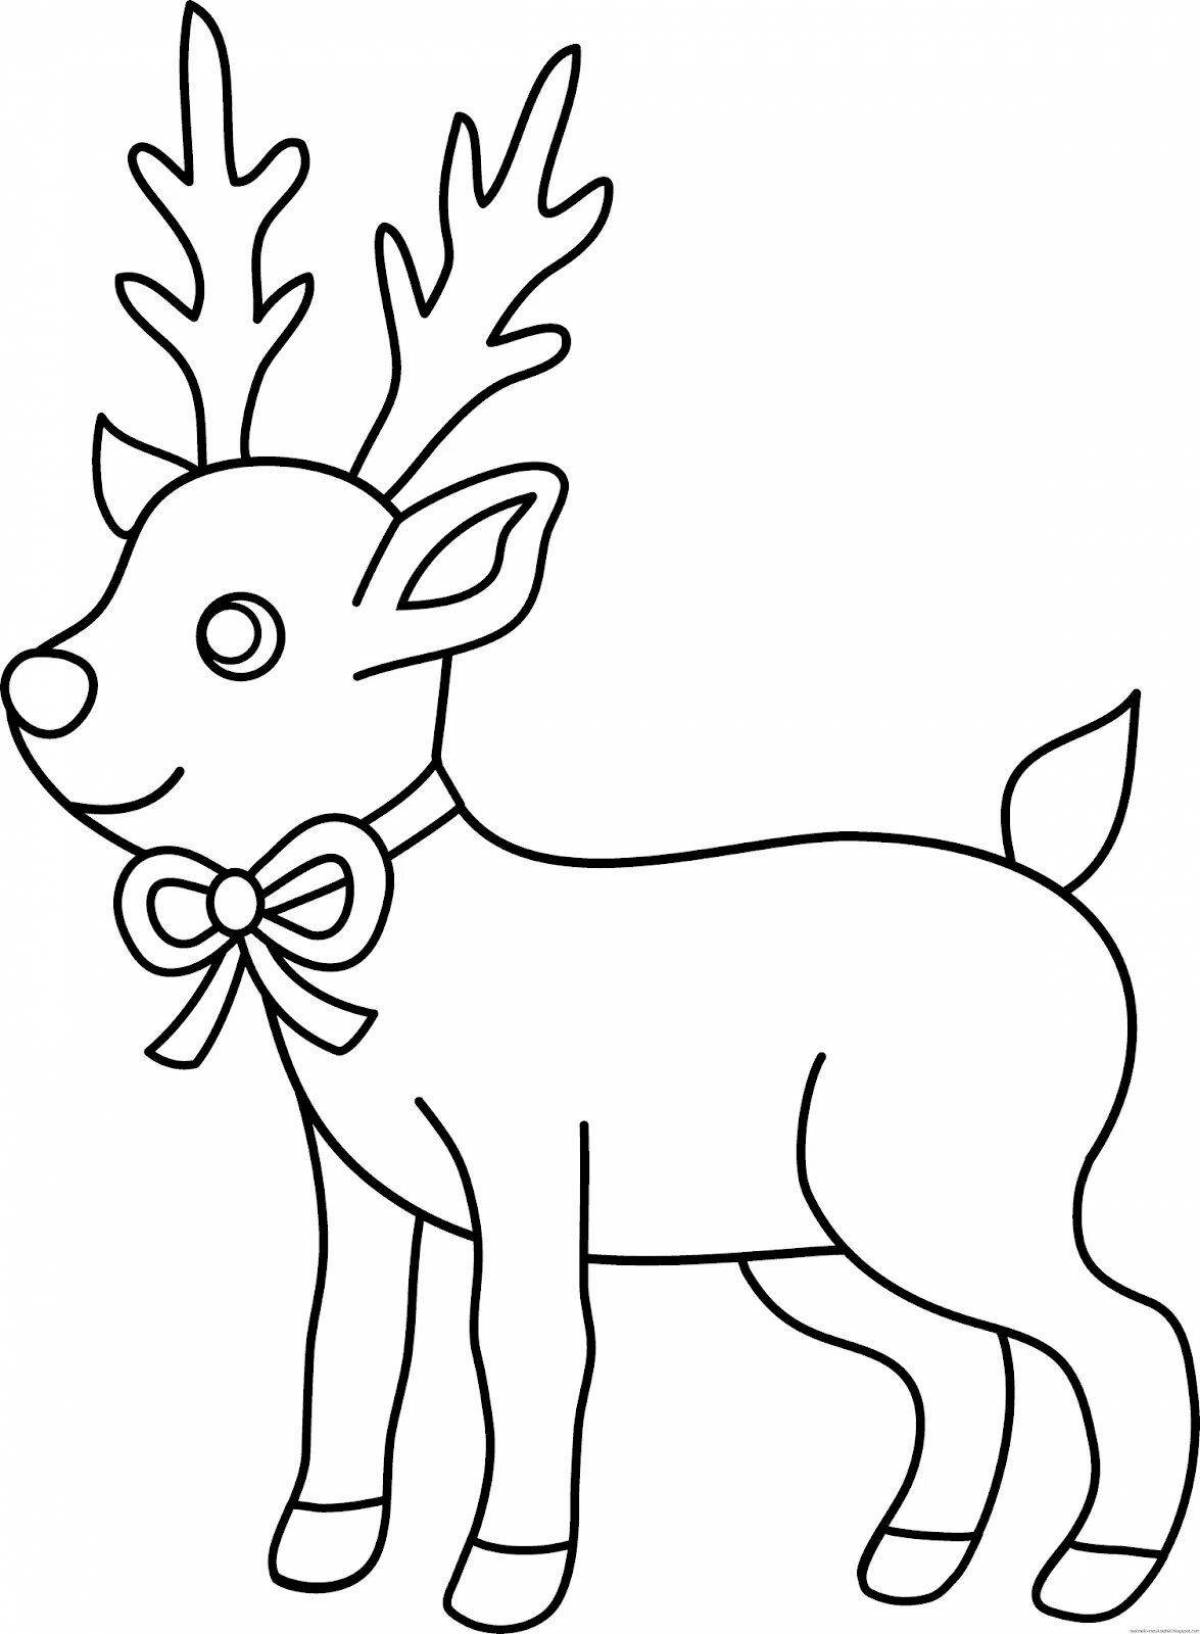 Exquisite Christmas deer